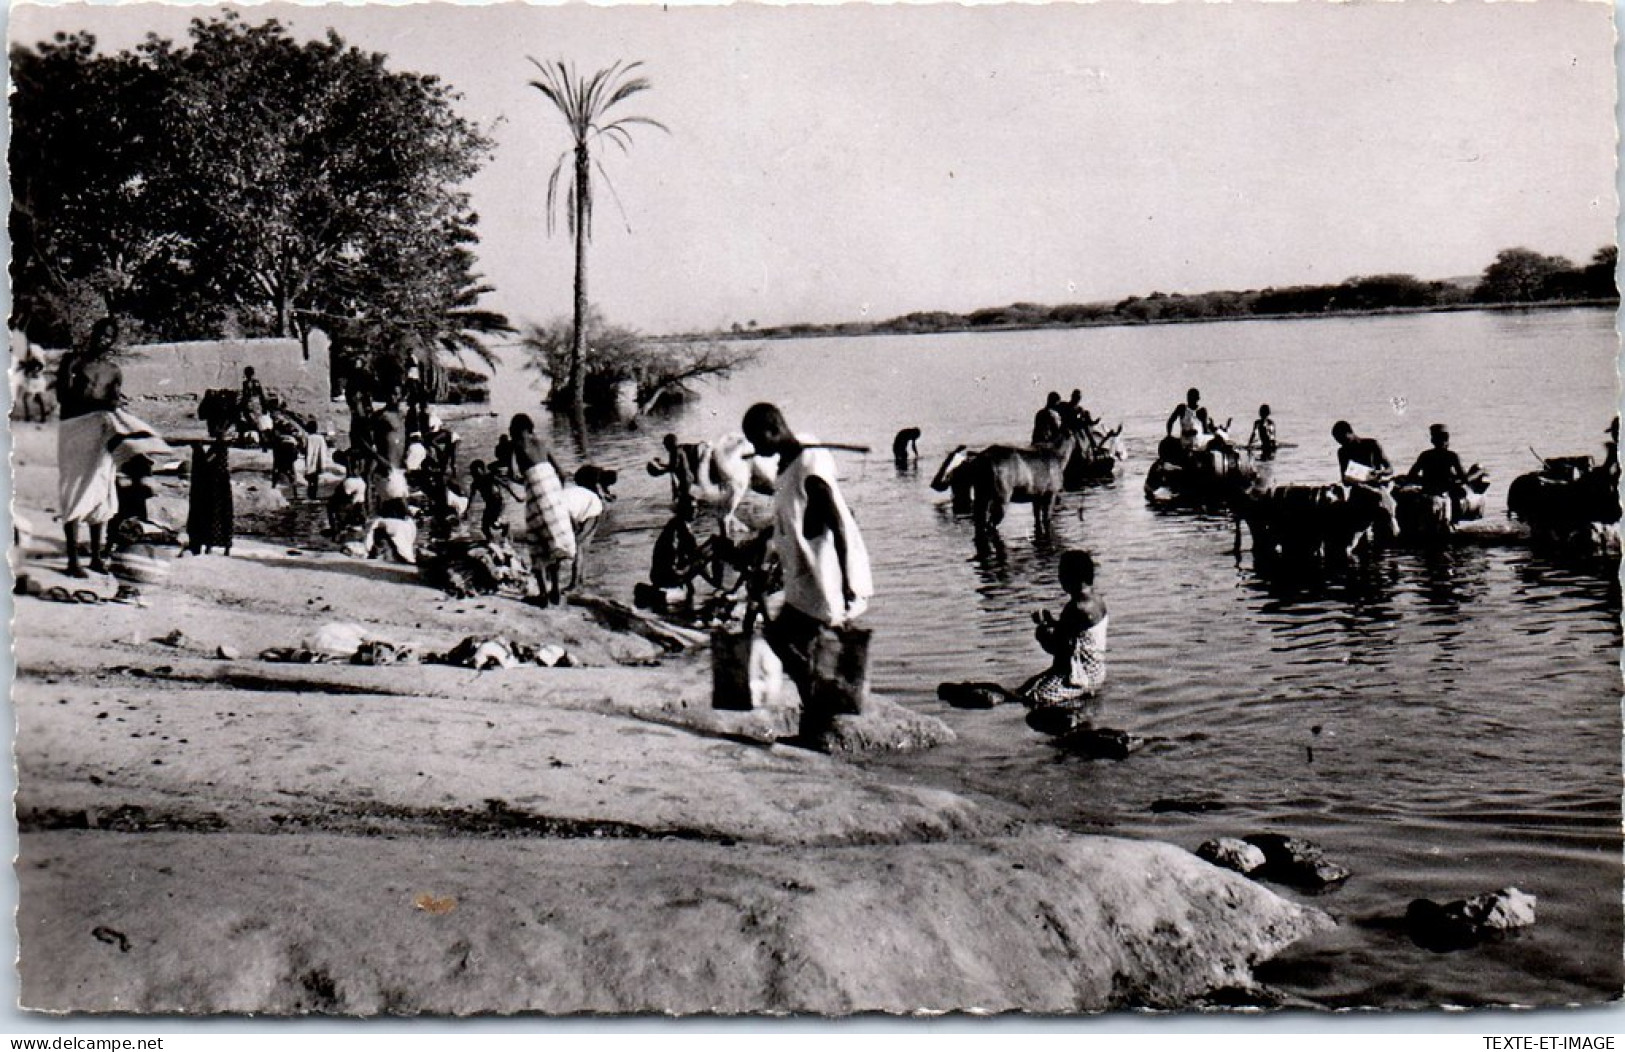 NIGER - NIAMEY - Scene De La Vie Au Bord Du Fleuve. - Niger